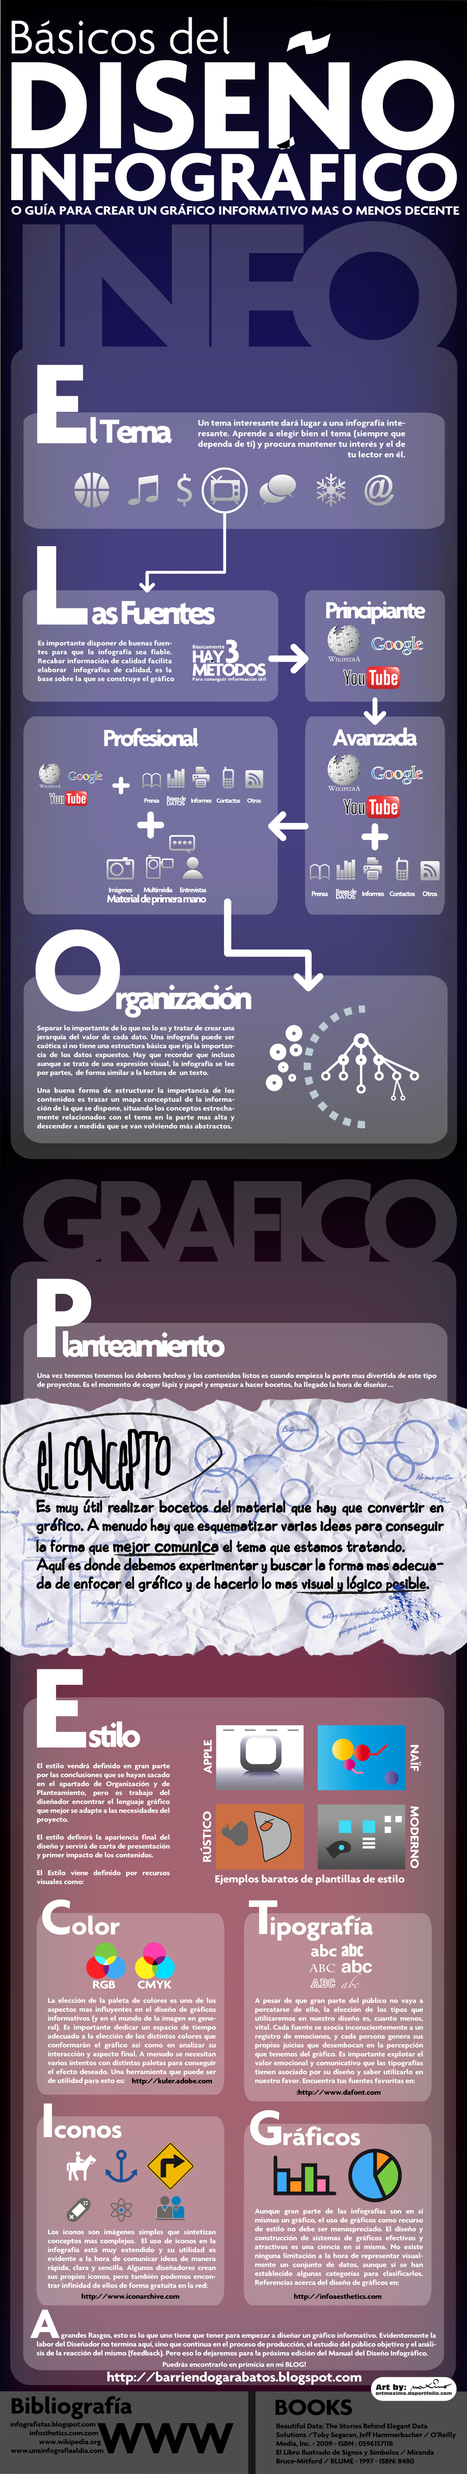 Cómo crear una infografía: guía de diseño│@MaximoBCN | El rincón de mferna | Scoop.it